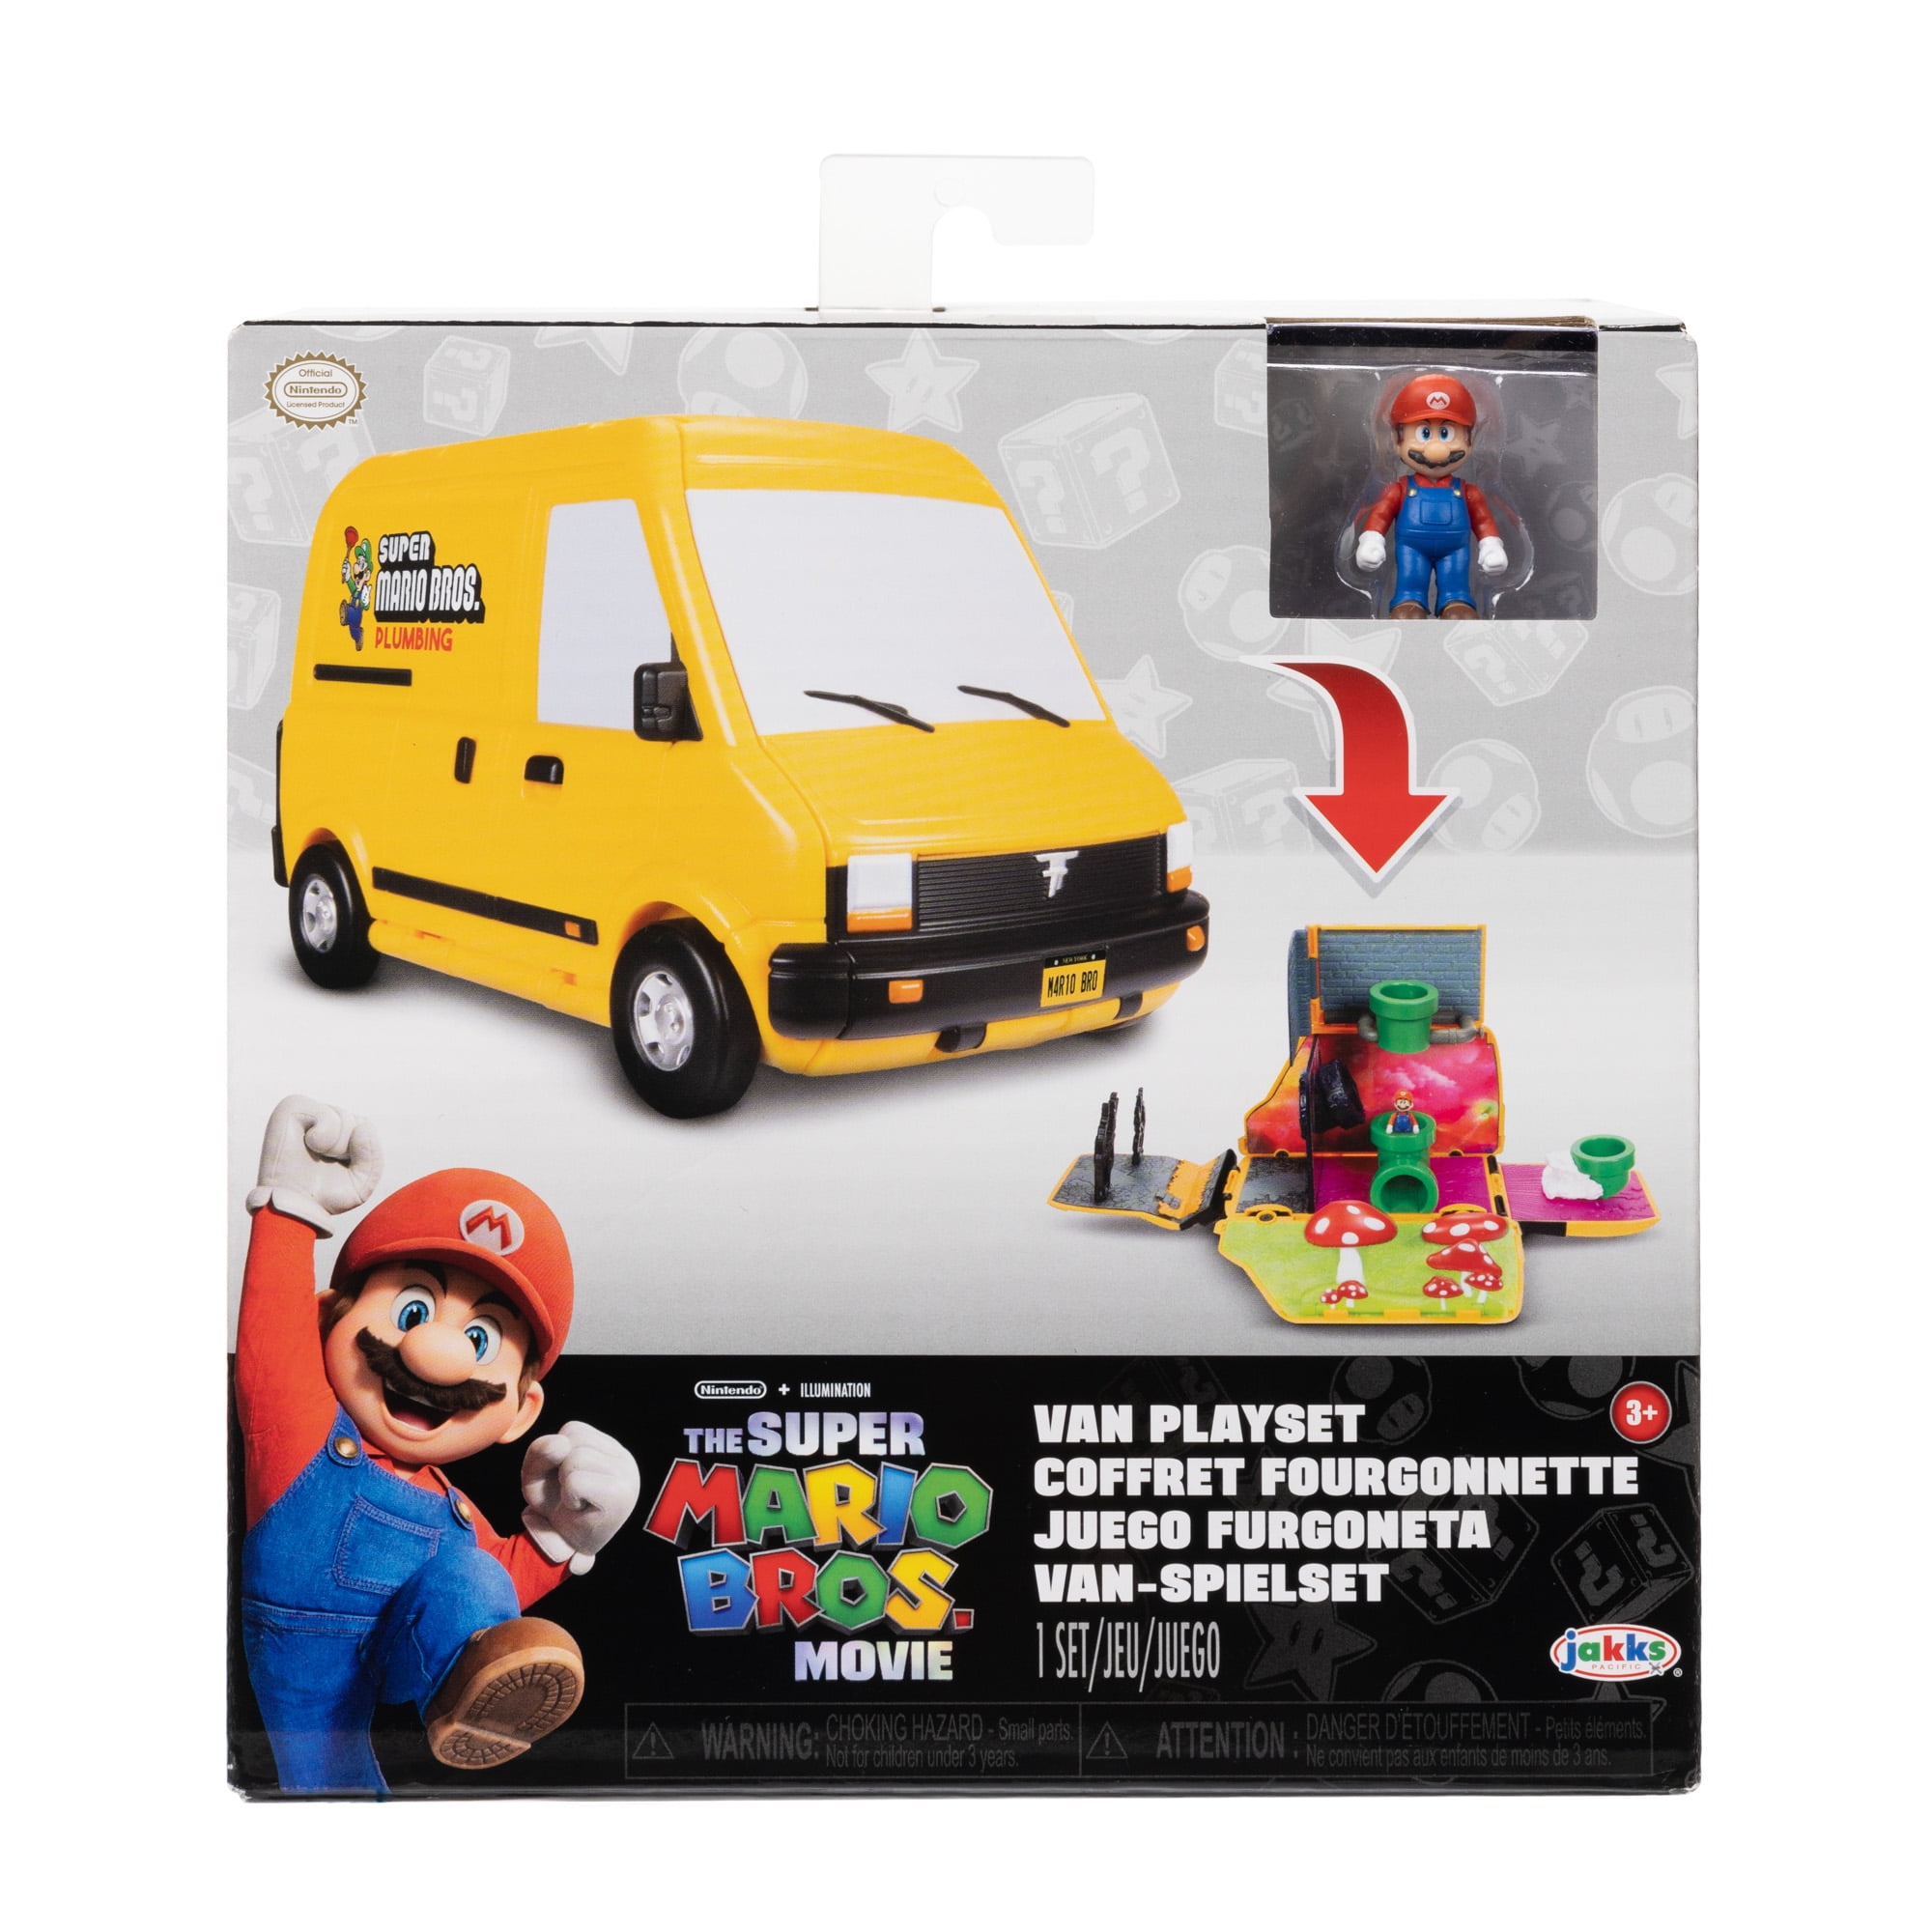 Super Mario Bros Bus [Pic]  Super mario bros, Super mario, Mario bros